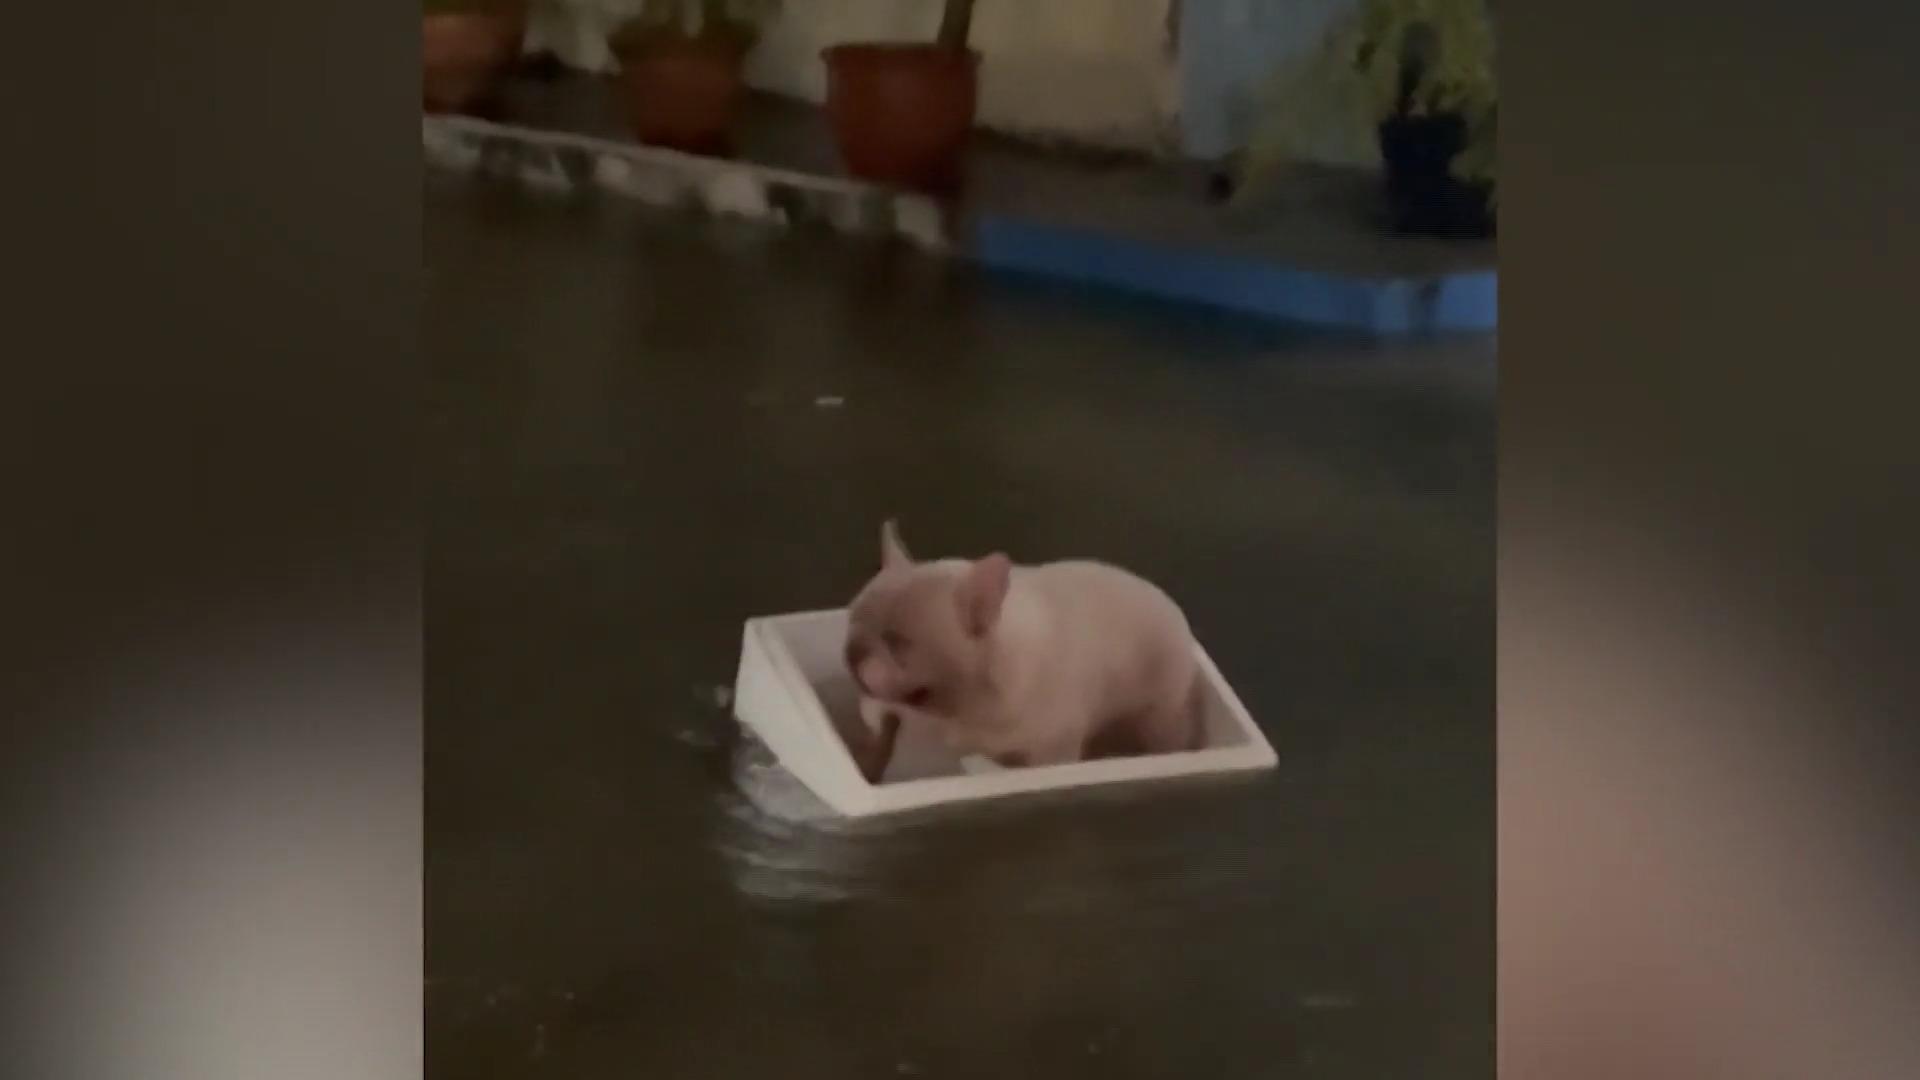 Überschwemmung in Thailand: Bulldogge sitzt in Box fest! Wie ist sie denn hier gelandet?